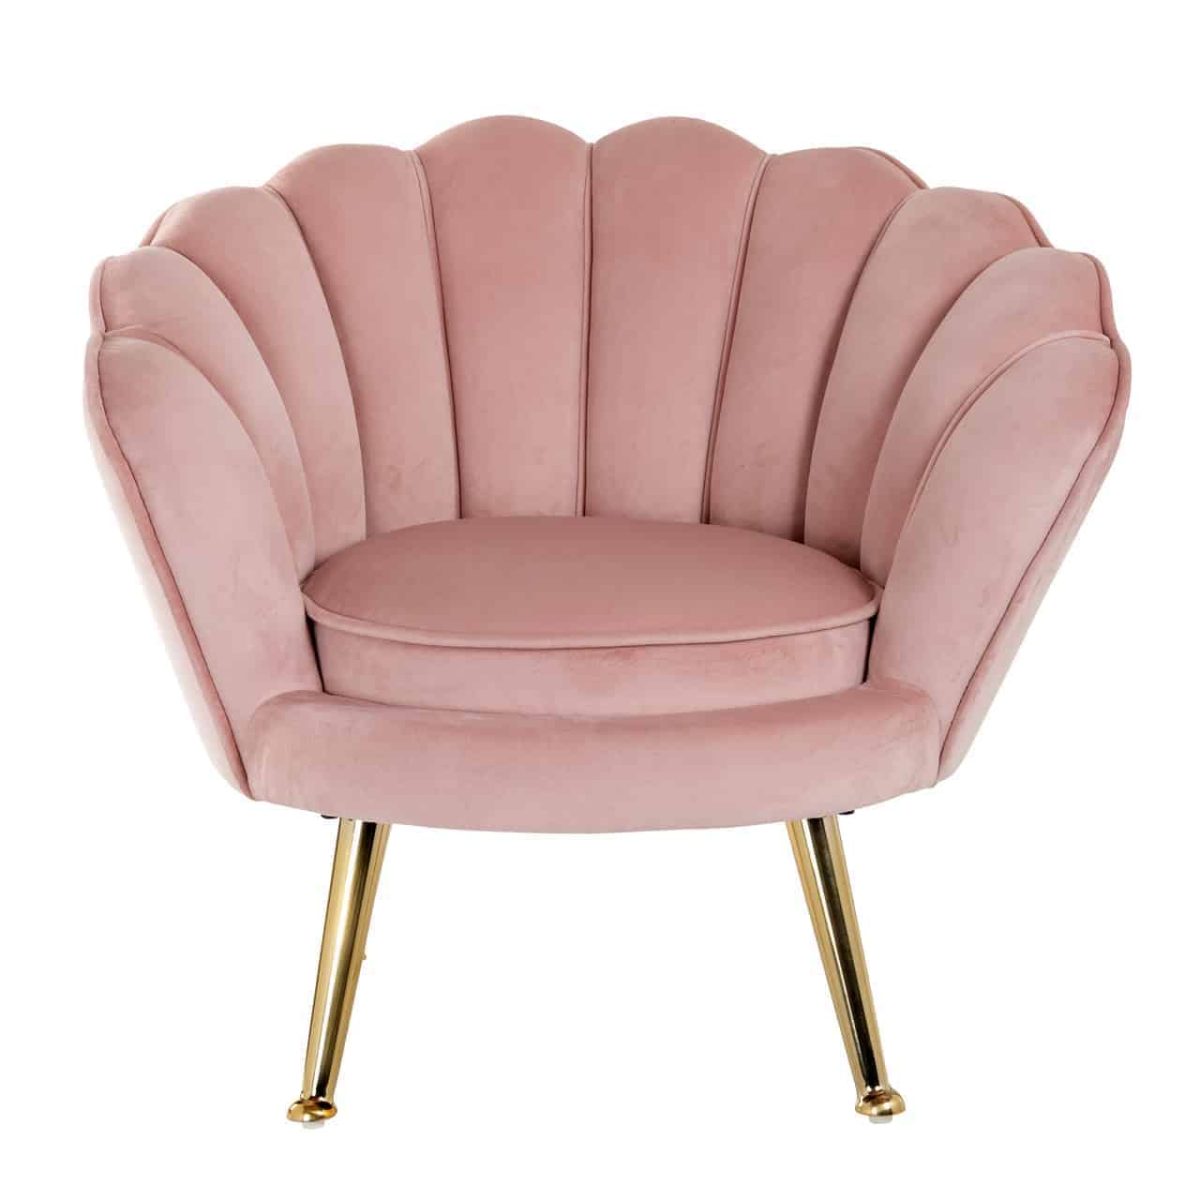 S4458 PINK VELVET - Kinderstoel Charly Pink velvet / gold (Quartz Pink 700)